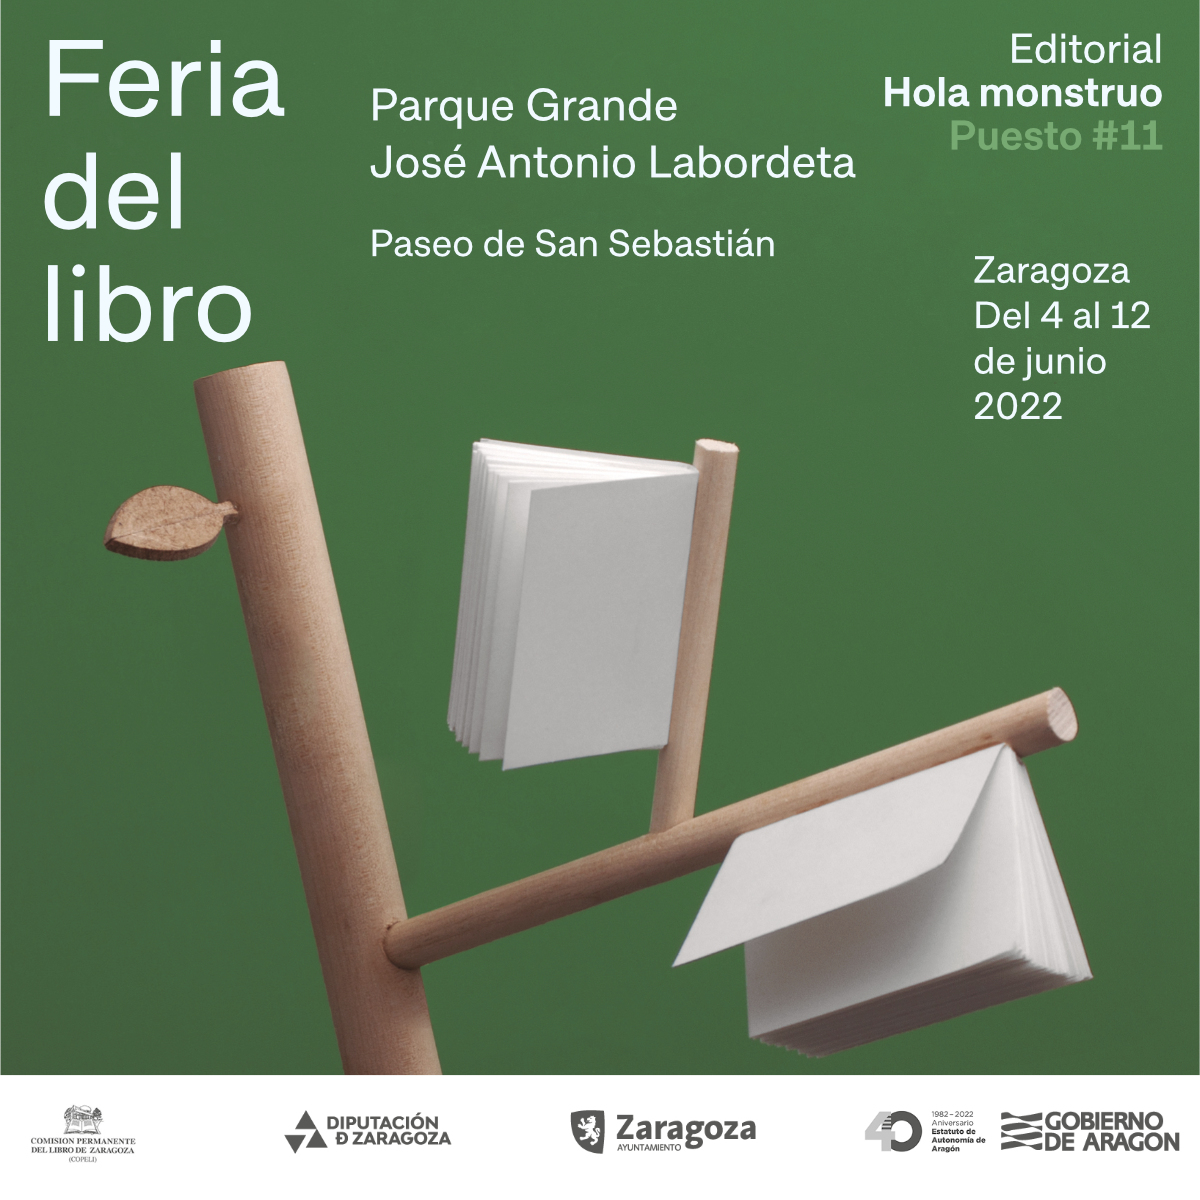 Firmas de Autores y actividades Feria del Libro Zaragoza 2022